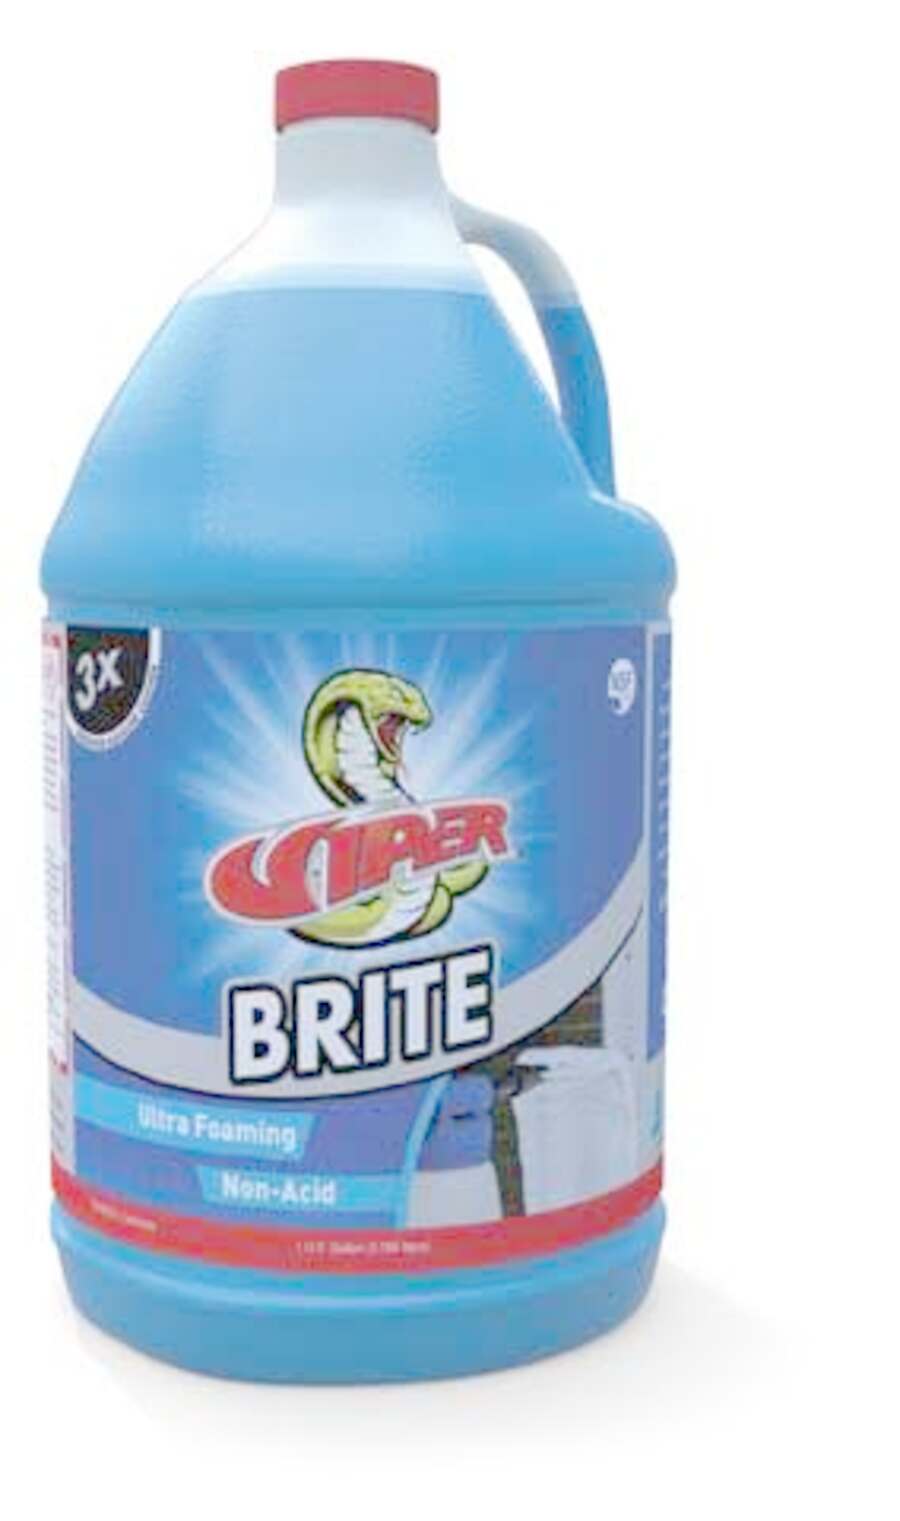 Viper Brite Coil Cleaner